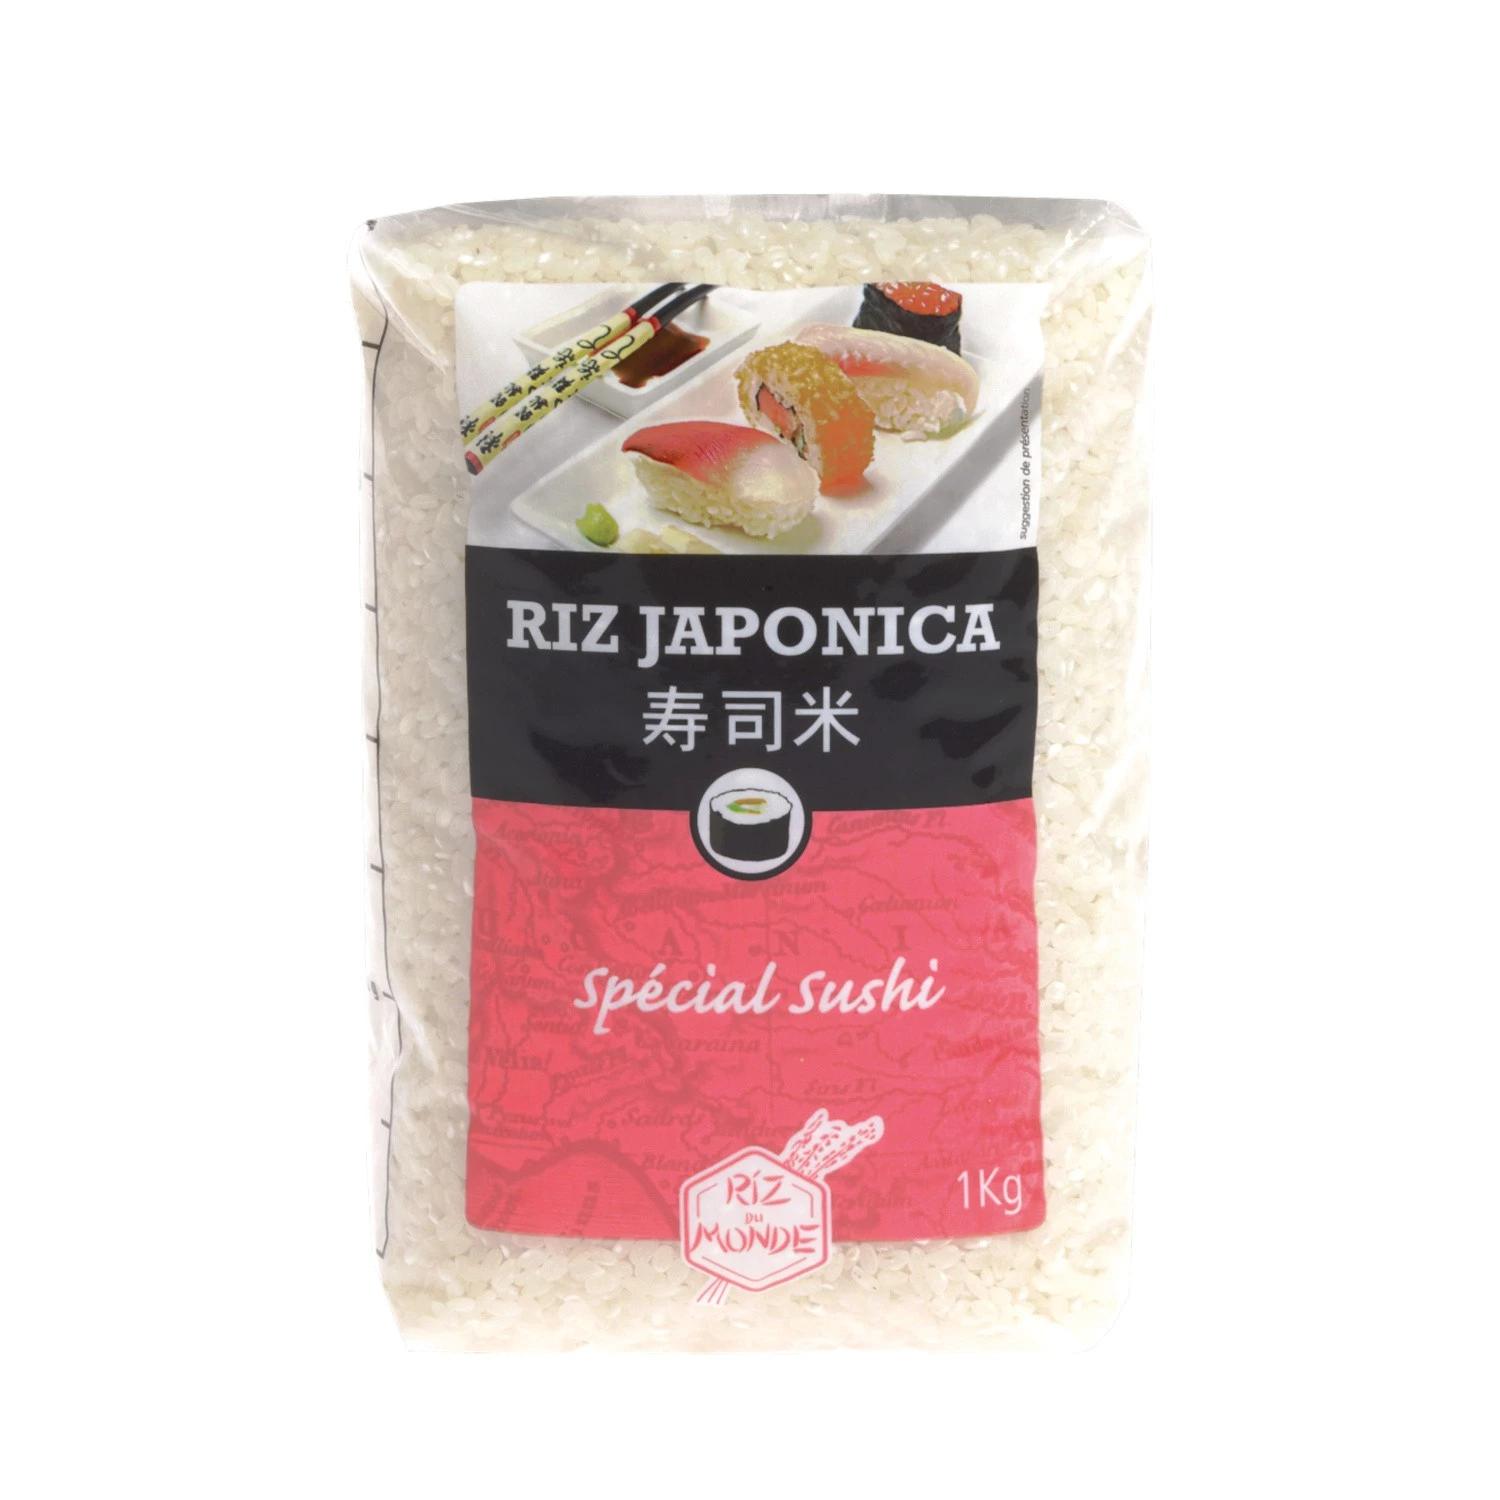 Riz Spécial Sushi Japonica, 1kg - RIZ DU MONDE